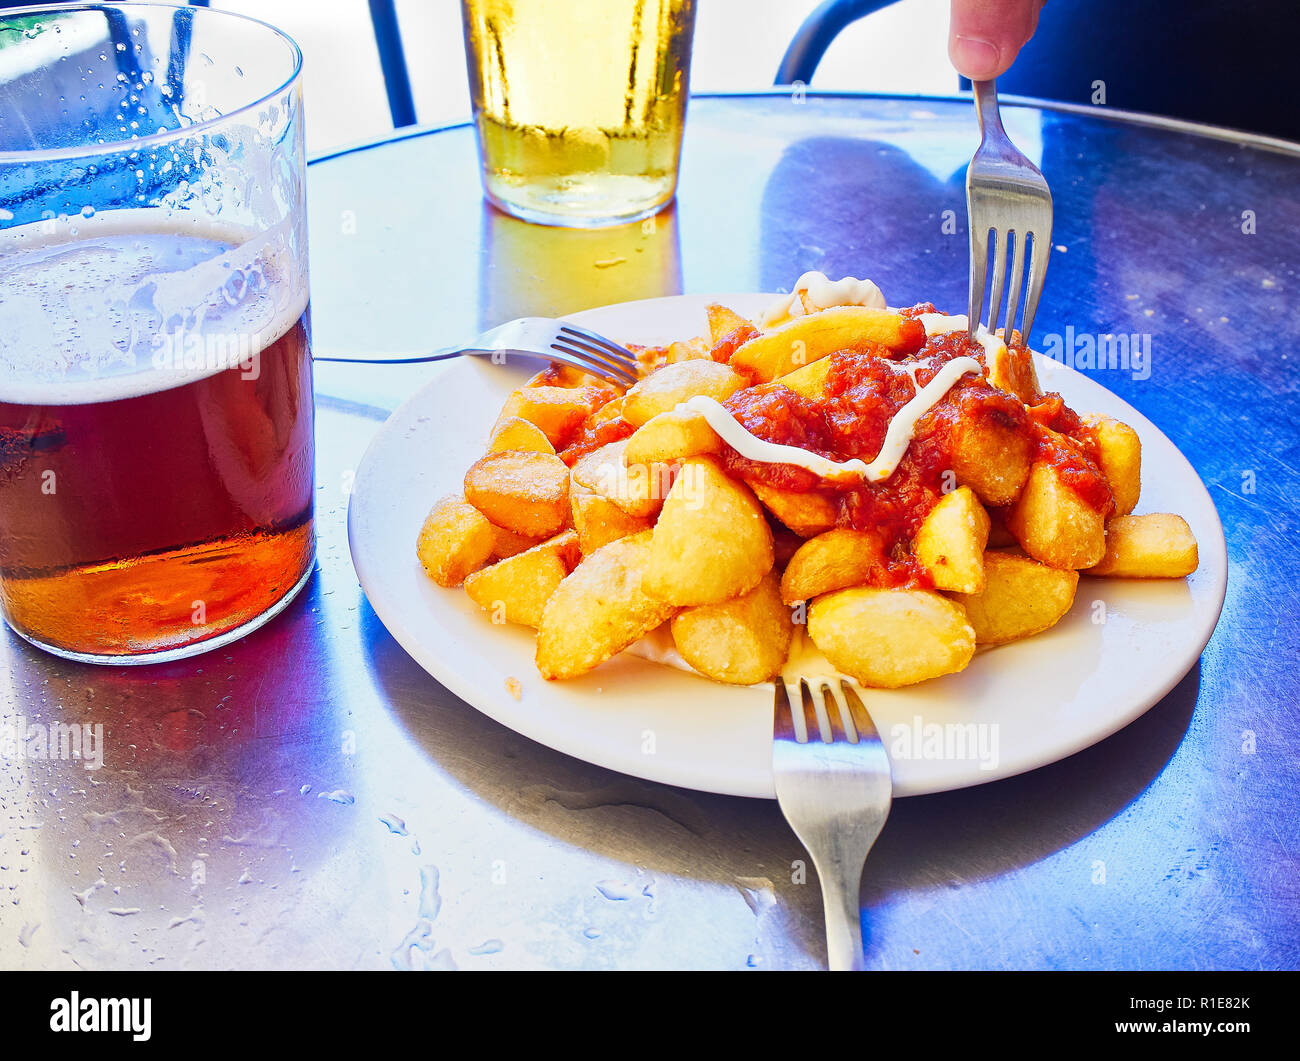 Une partie de patatas bravas sur une table métallique. Frites garnies de sauce épicée, l'un des plus communs des tapas espagnoles. Banque D'Images